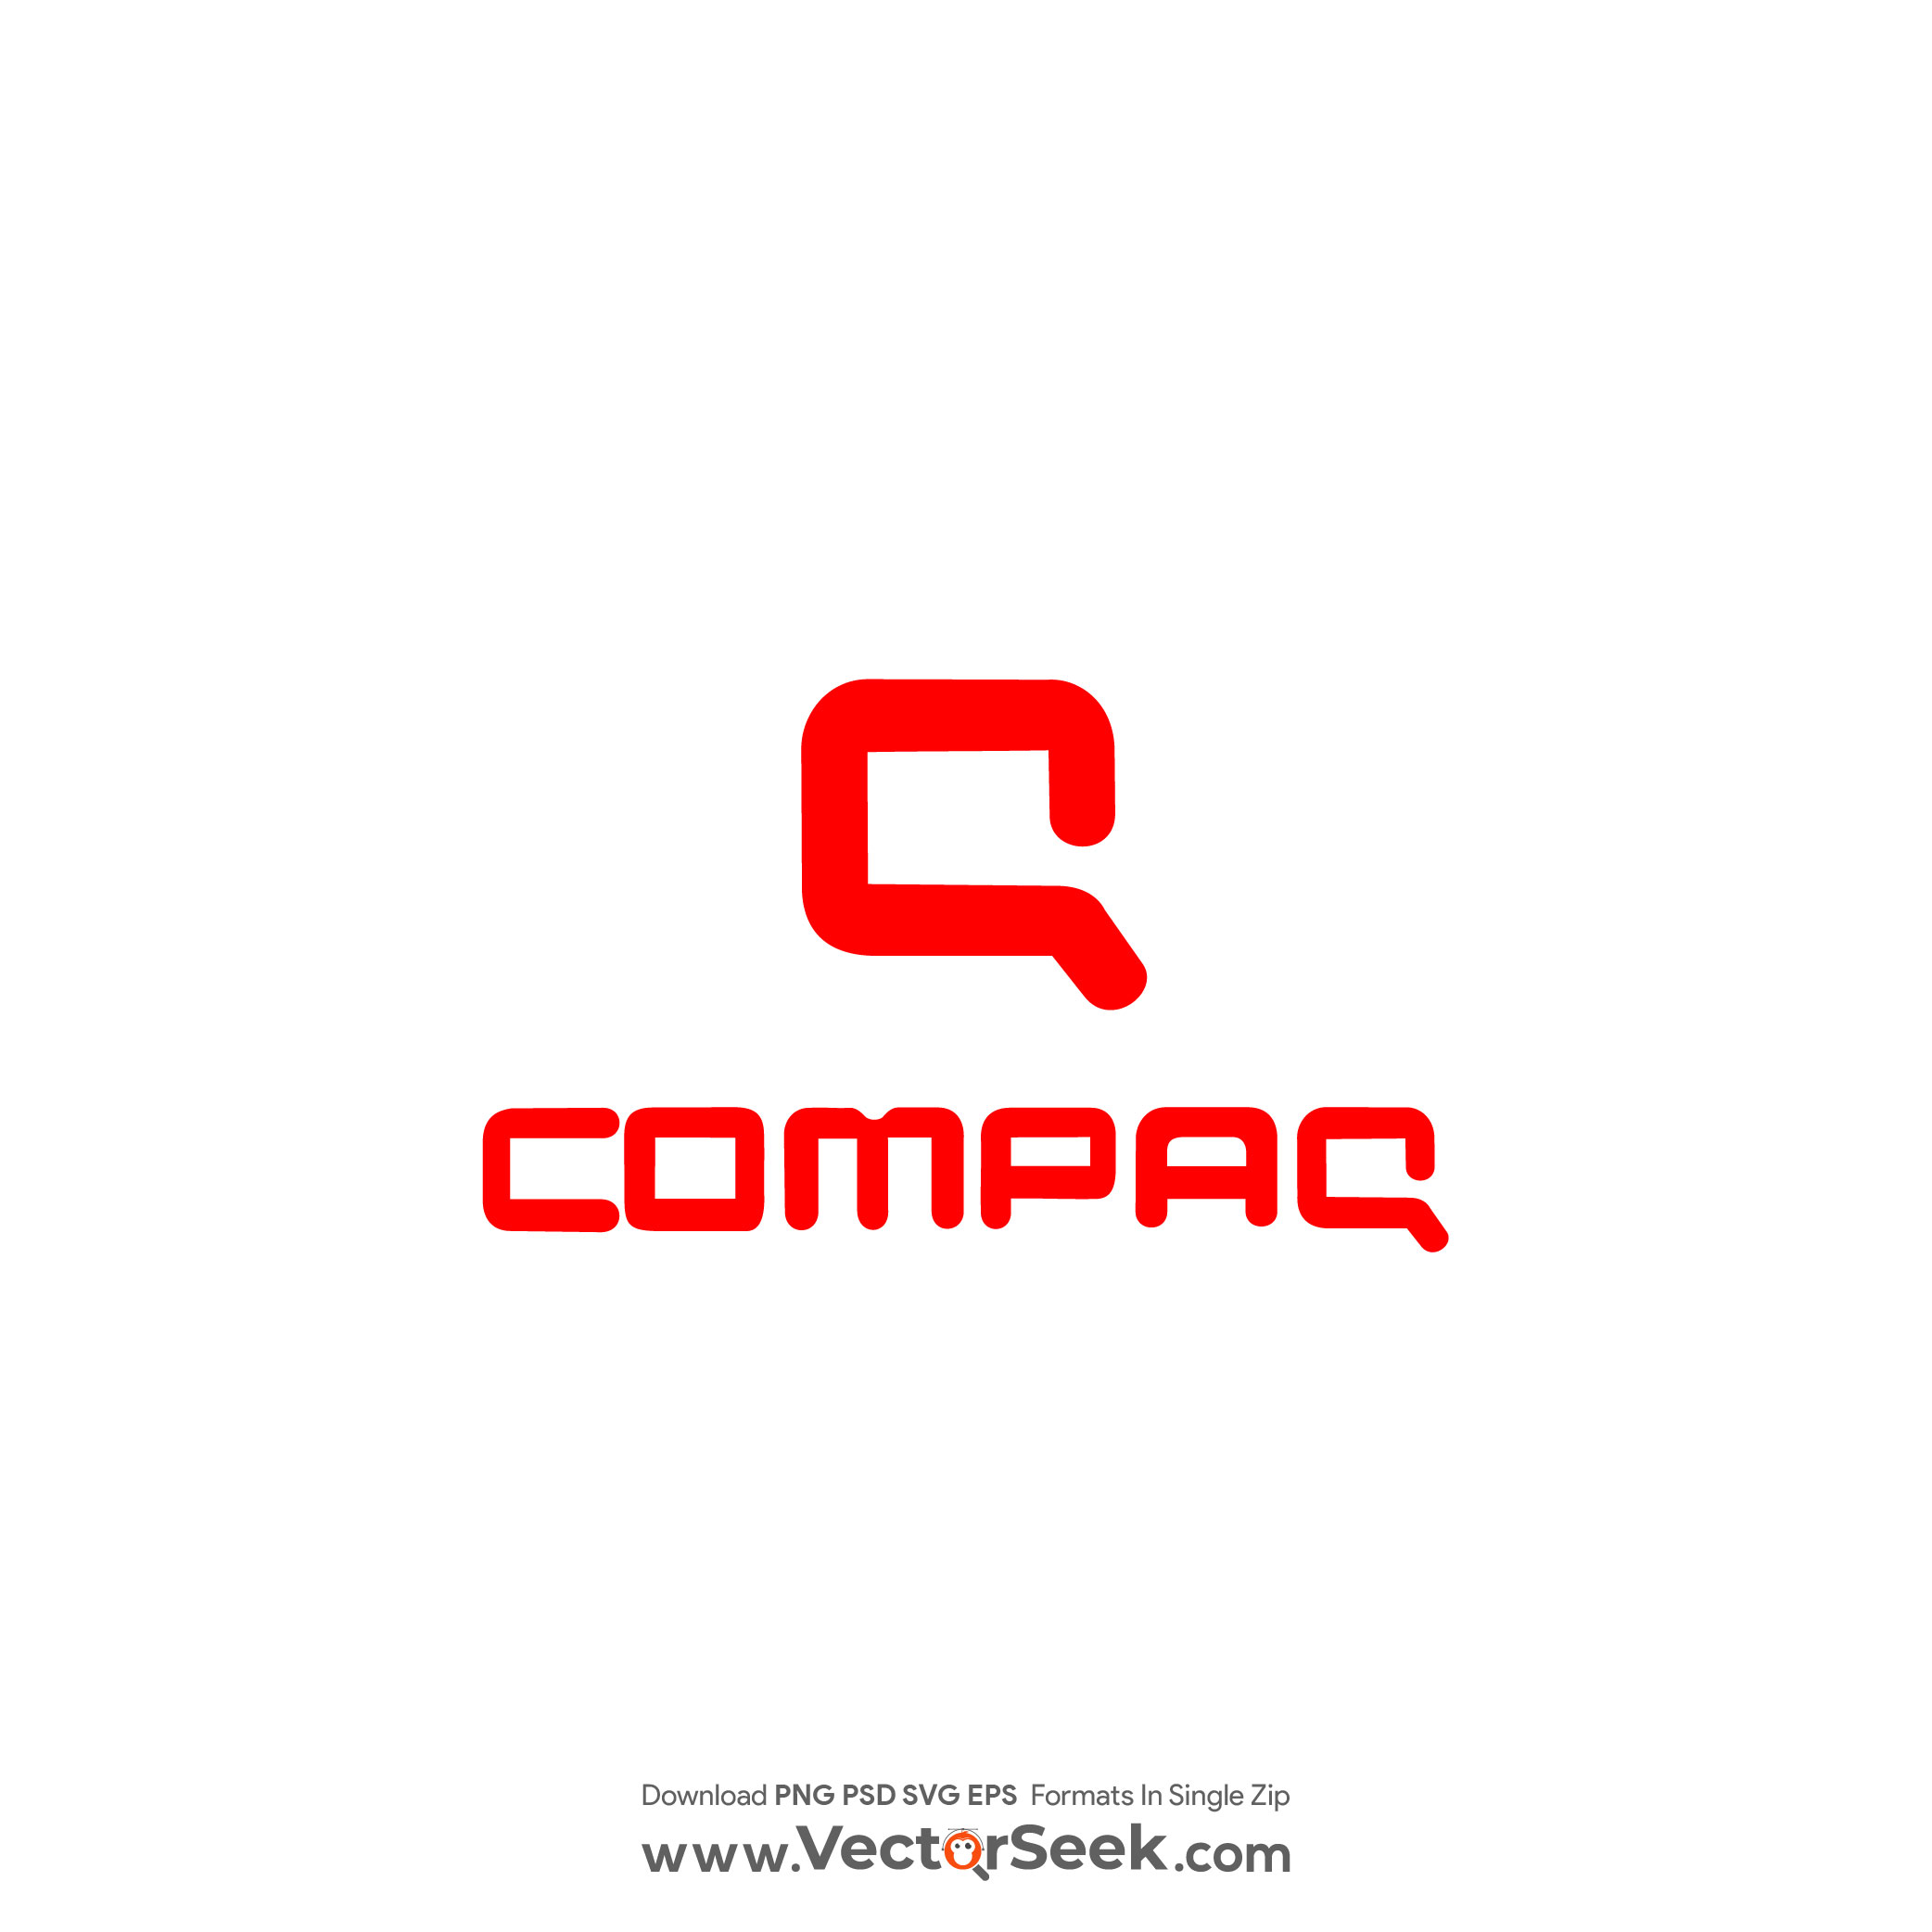 New Compaq Logo Vector